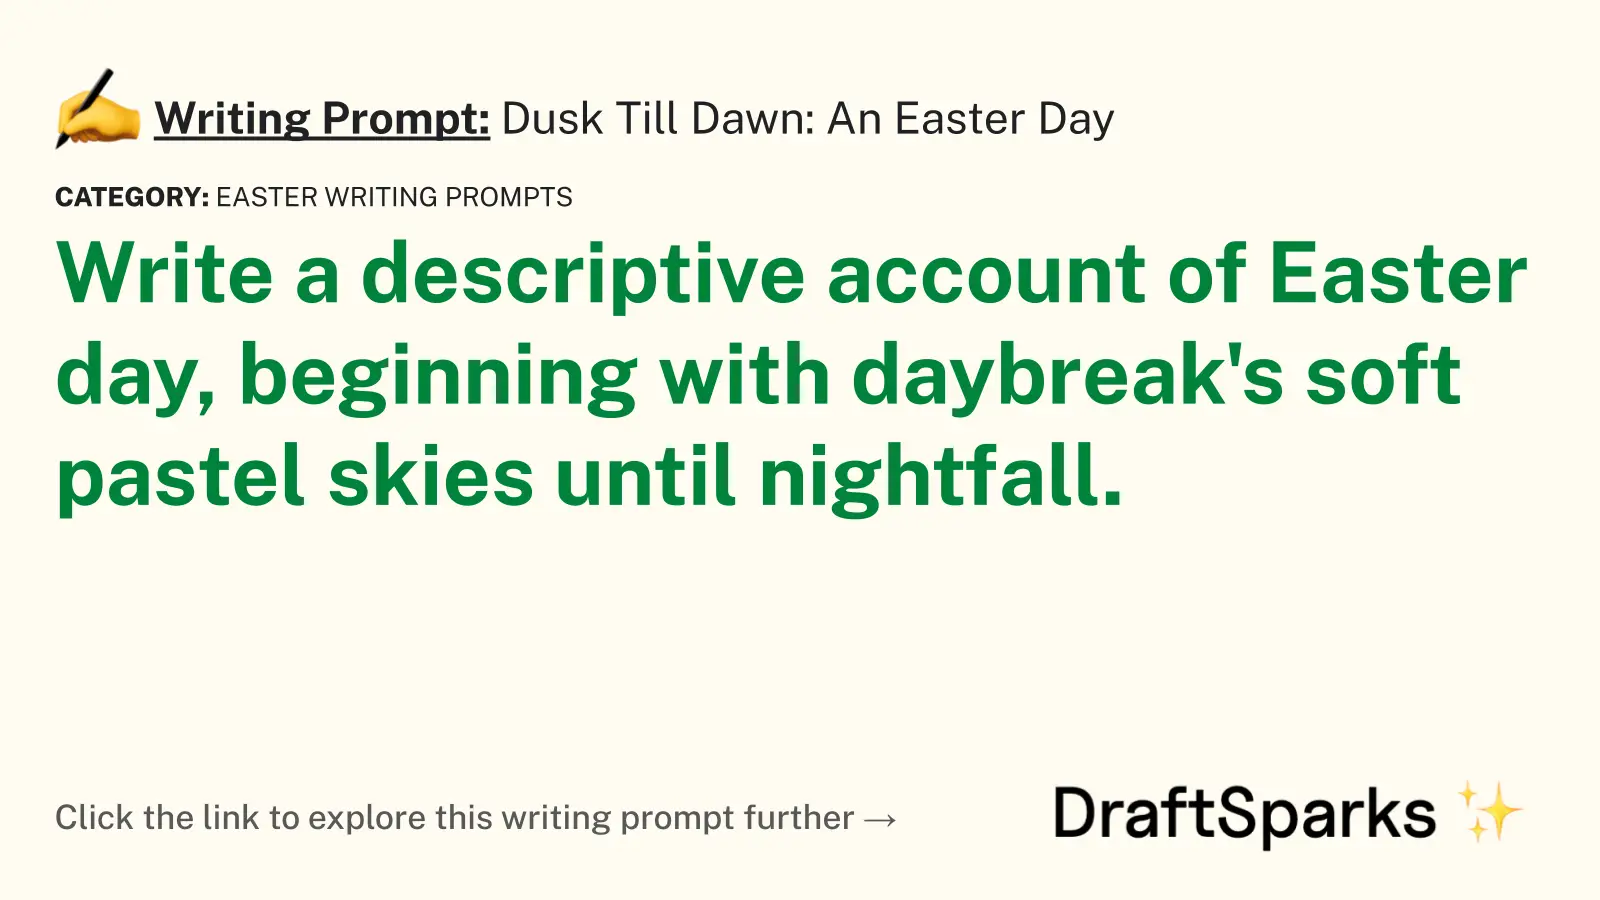 Dusk Till Dawn: An Easter Day